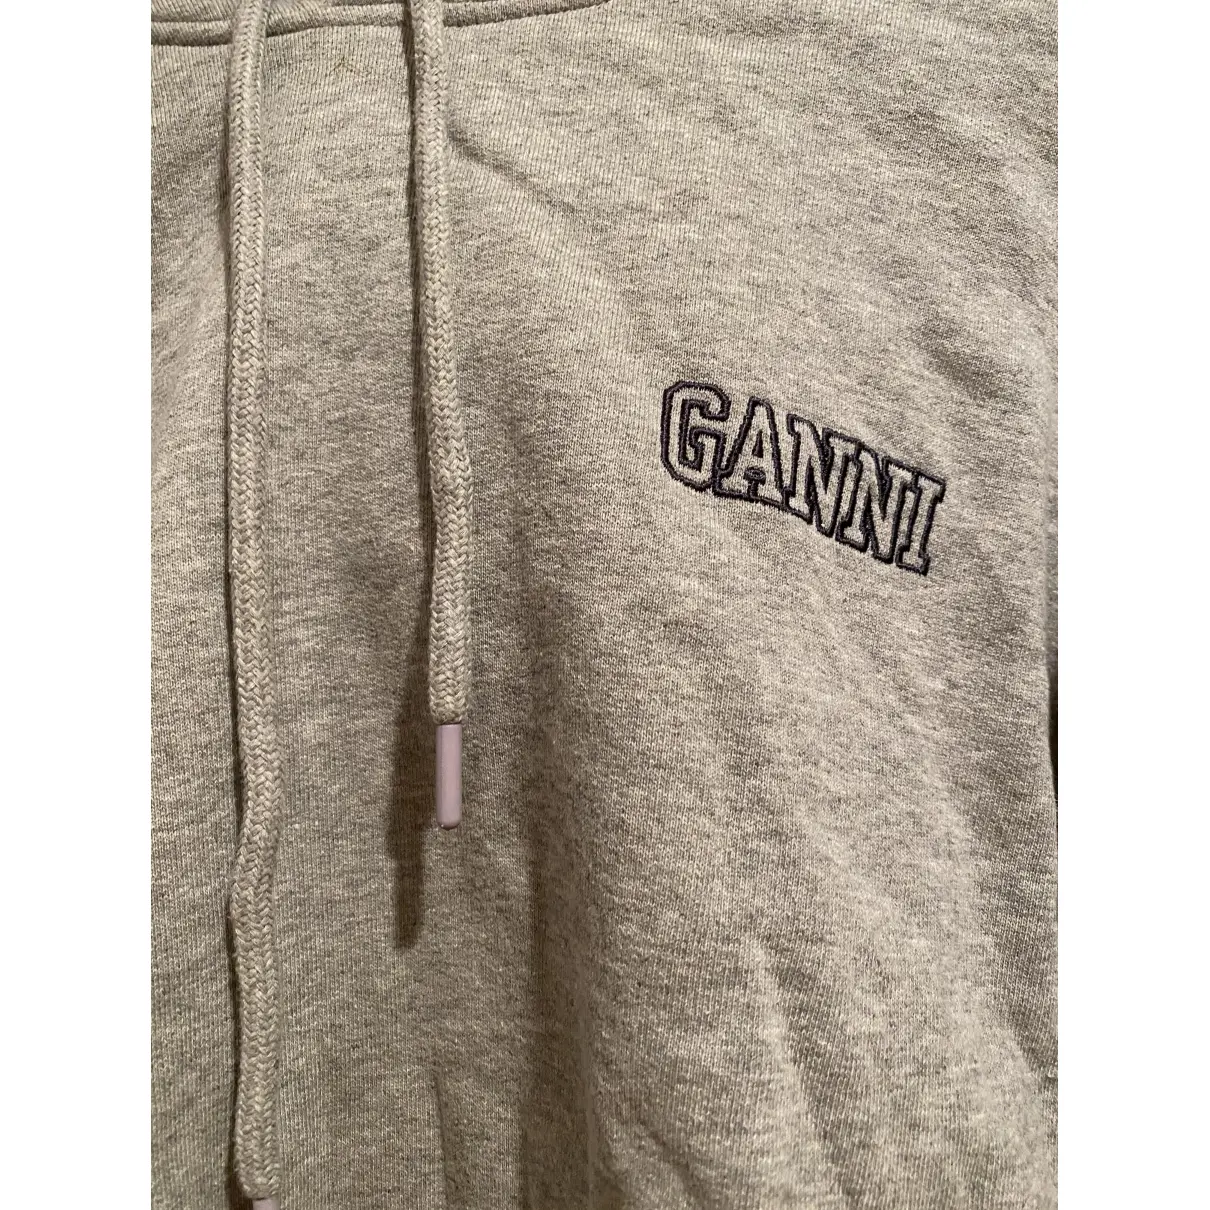 Buy Ganni Knitwear online